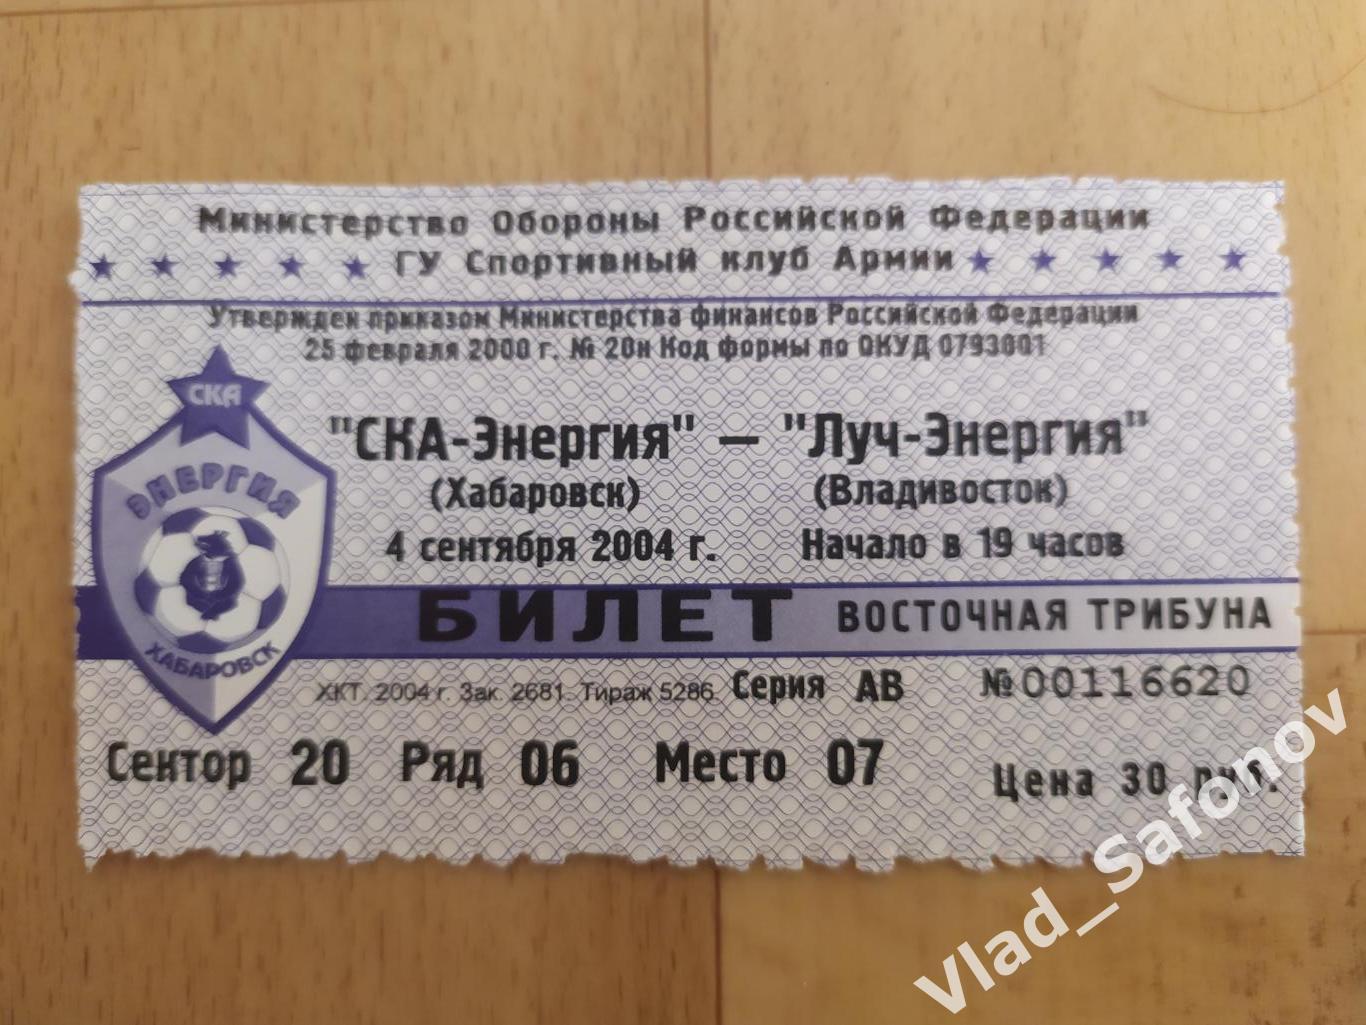 Ска(Хабаровск) - Луч(Владивосток) + билет. 1 дивизион. 04/09/2004. 1